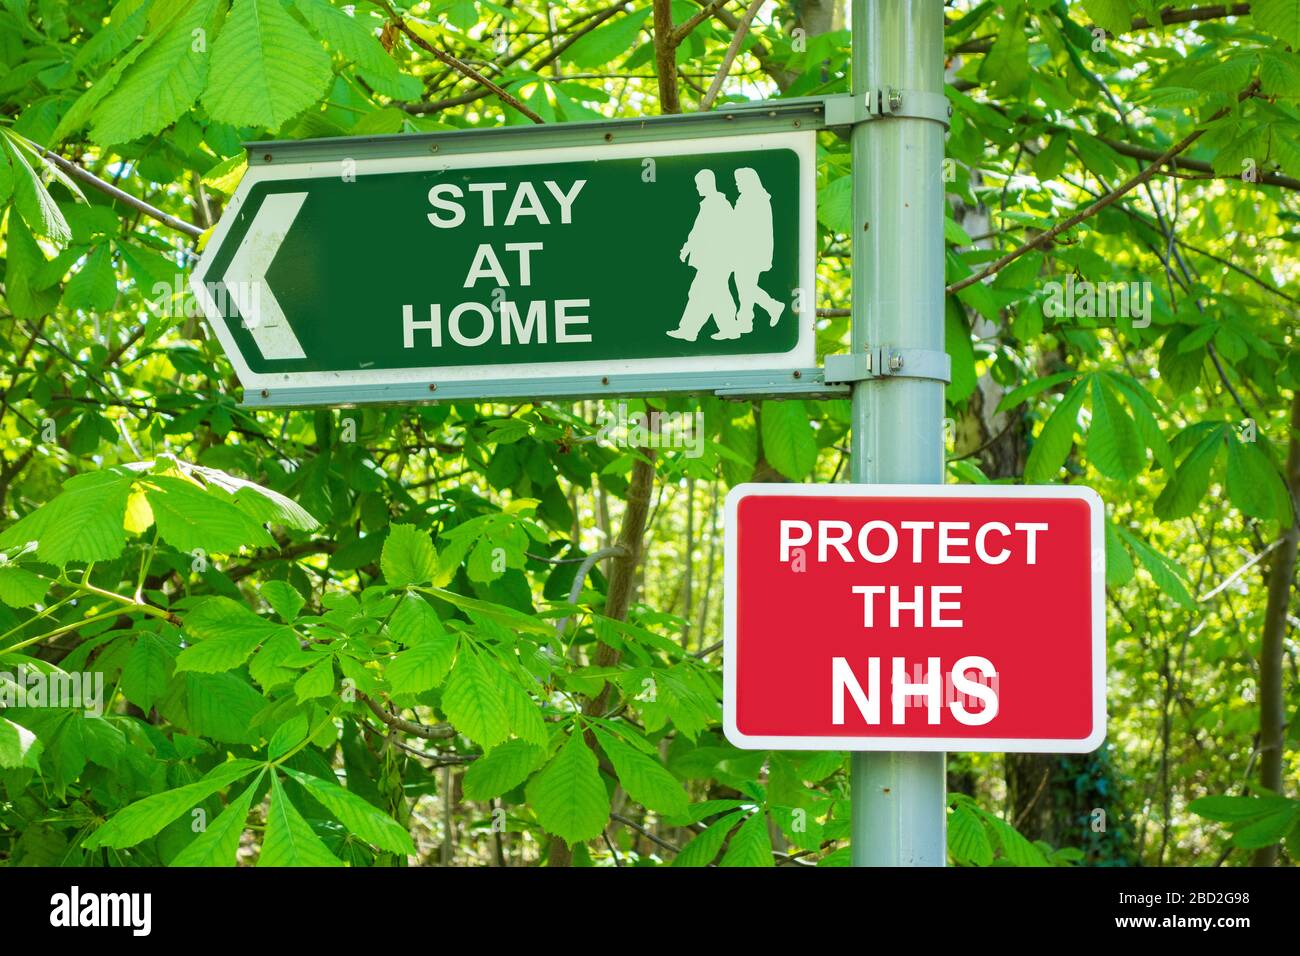 Estancia en casa, proteger el NHS, Coronavirus, ejercicio, distanciamiento social, auto-aislamiento... concepto. Foto de stock